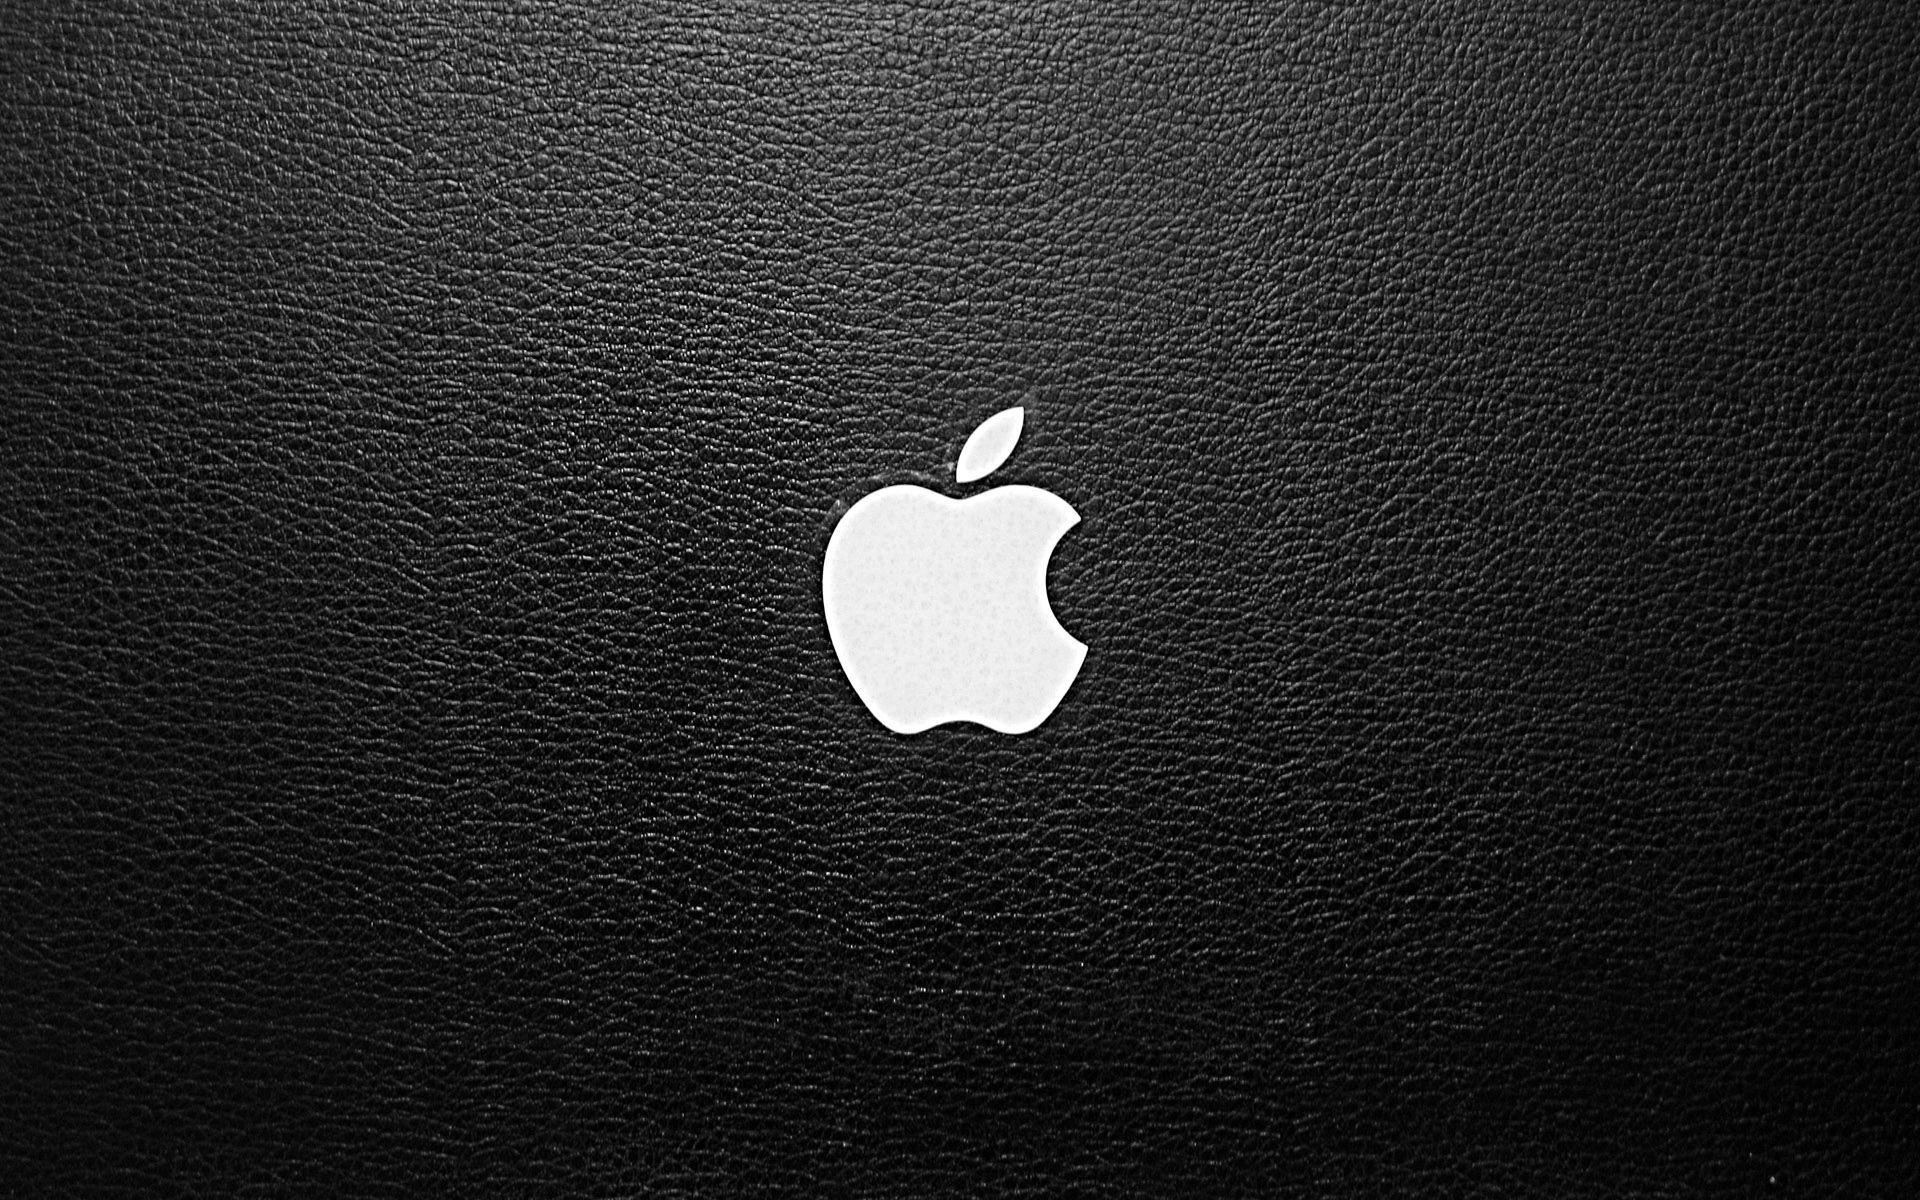 Apple MacBook Air Wallpapers - Top Free Apple MacBook Air Backgrounds